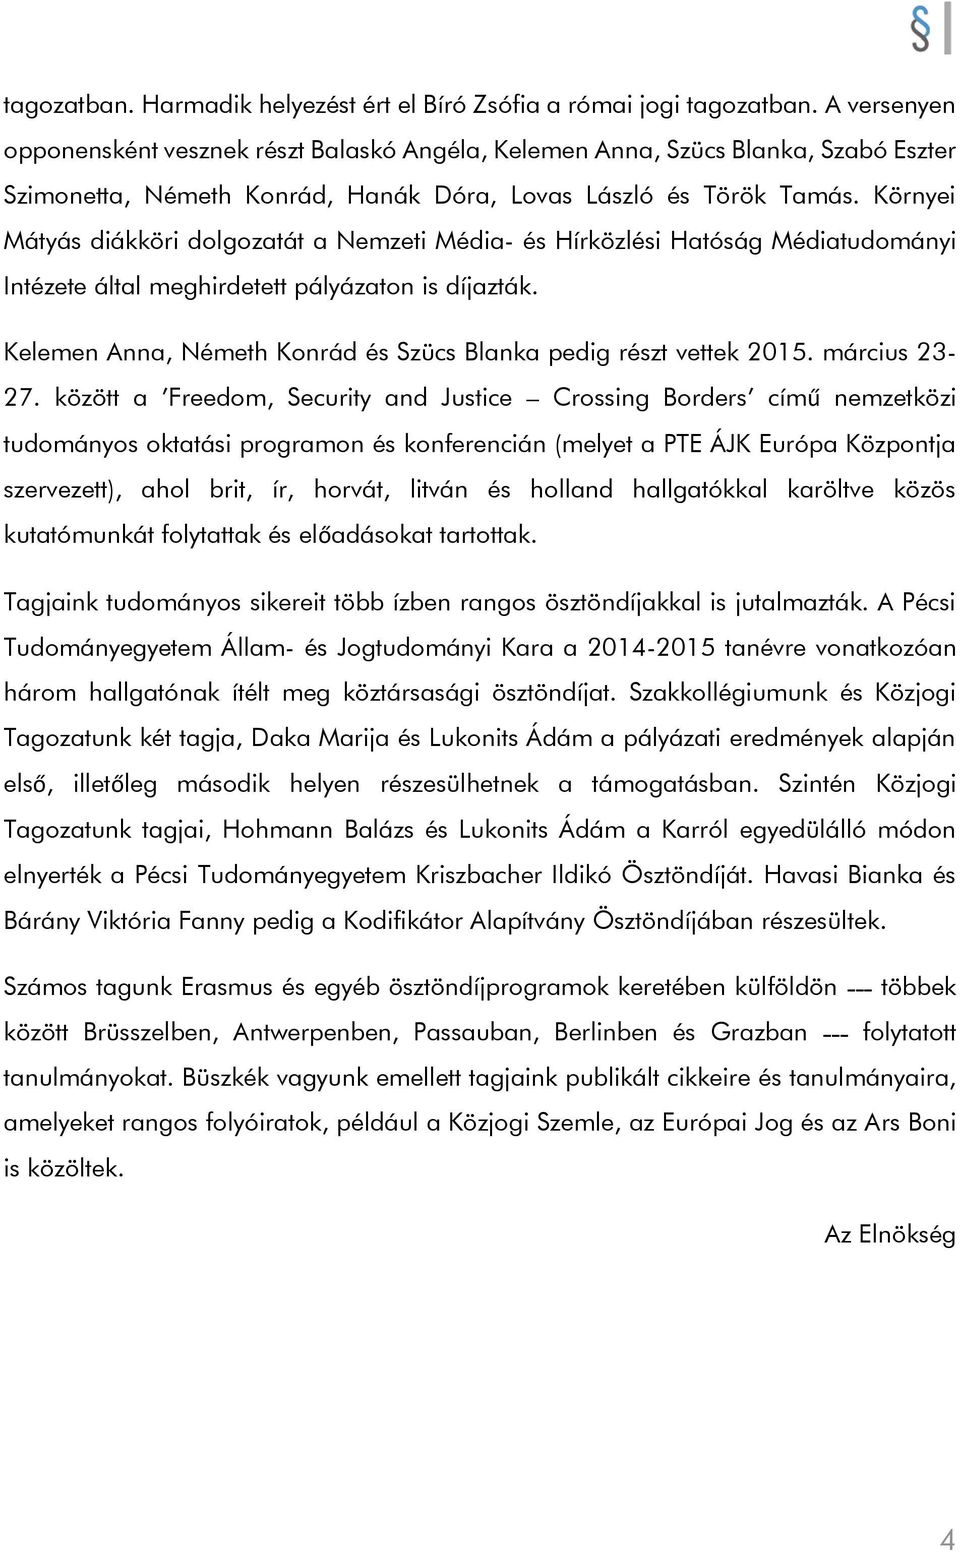 Környei Mátyás diákköri dolgozatát a Nemzeti Média- és Hírközlési Hatóság Médiatudományi Intézete által meghirdetett pályázaton is díjazták.